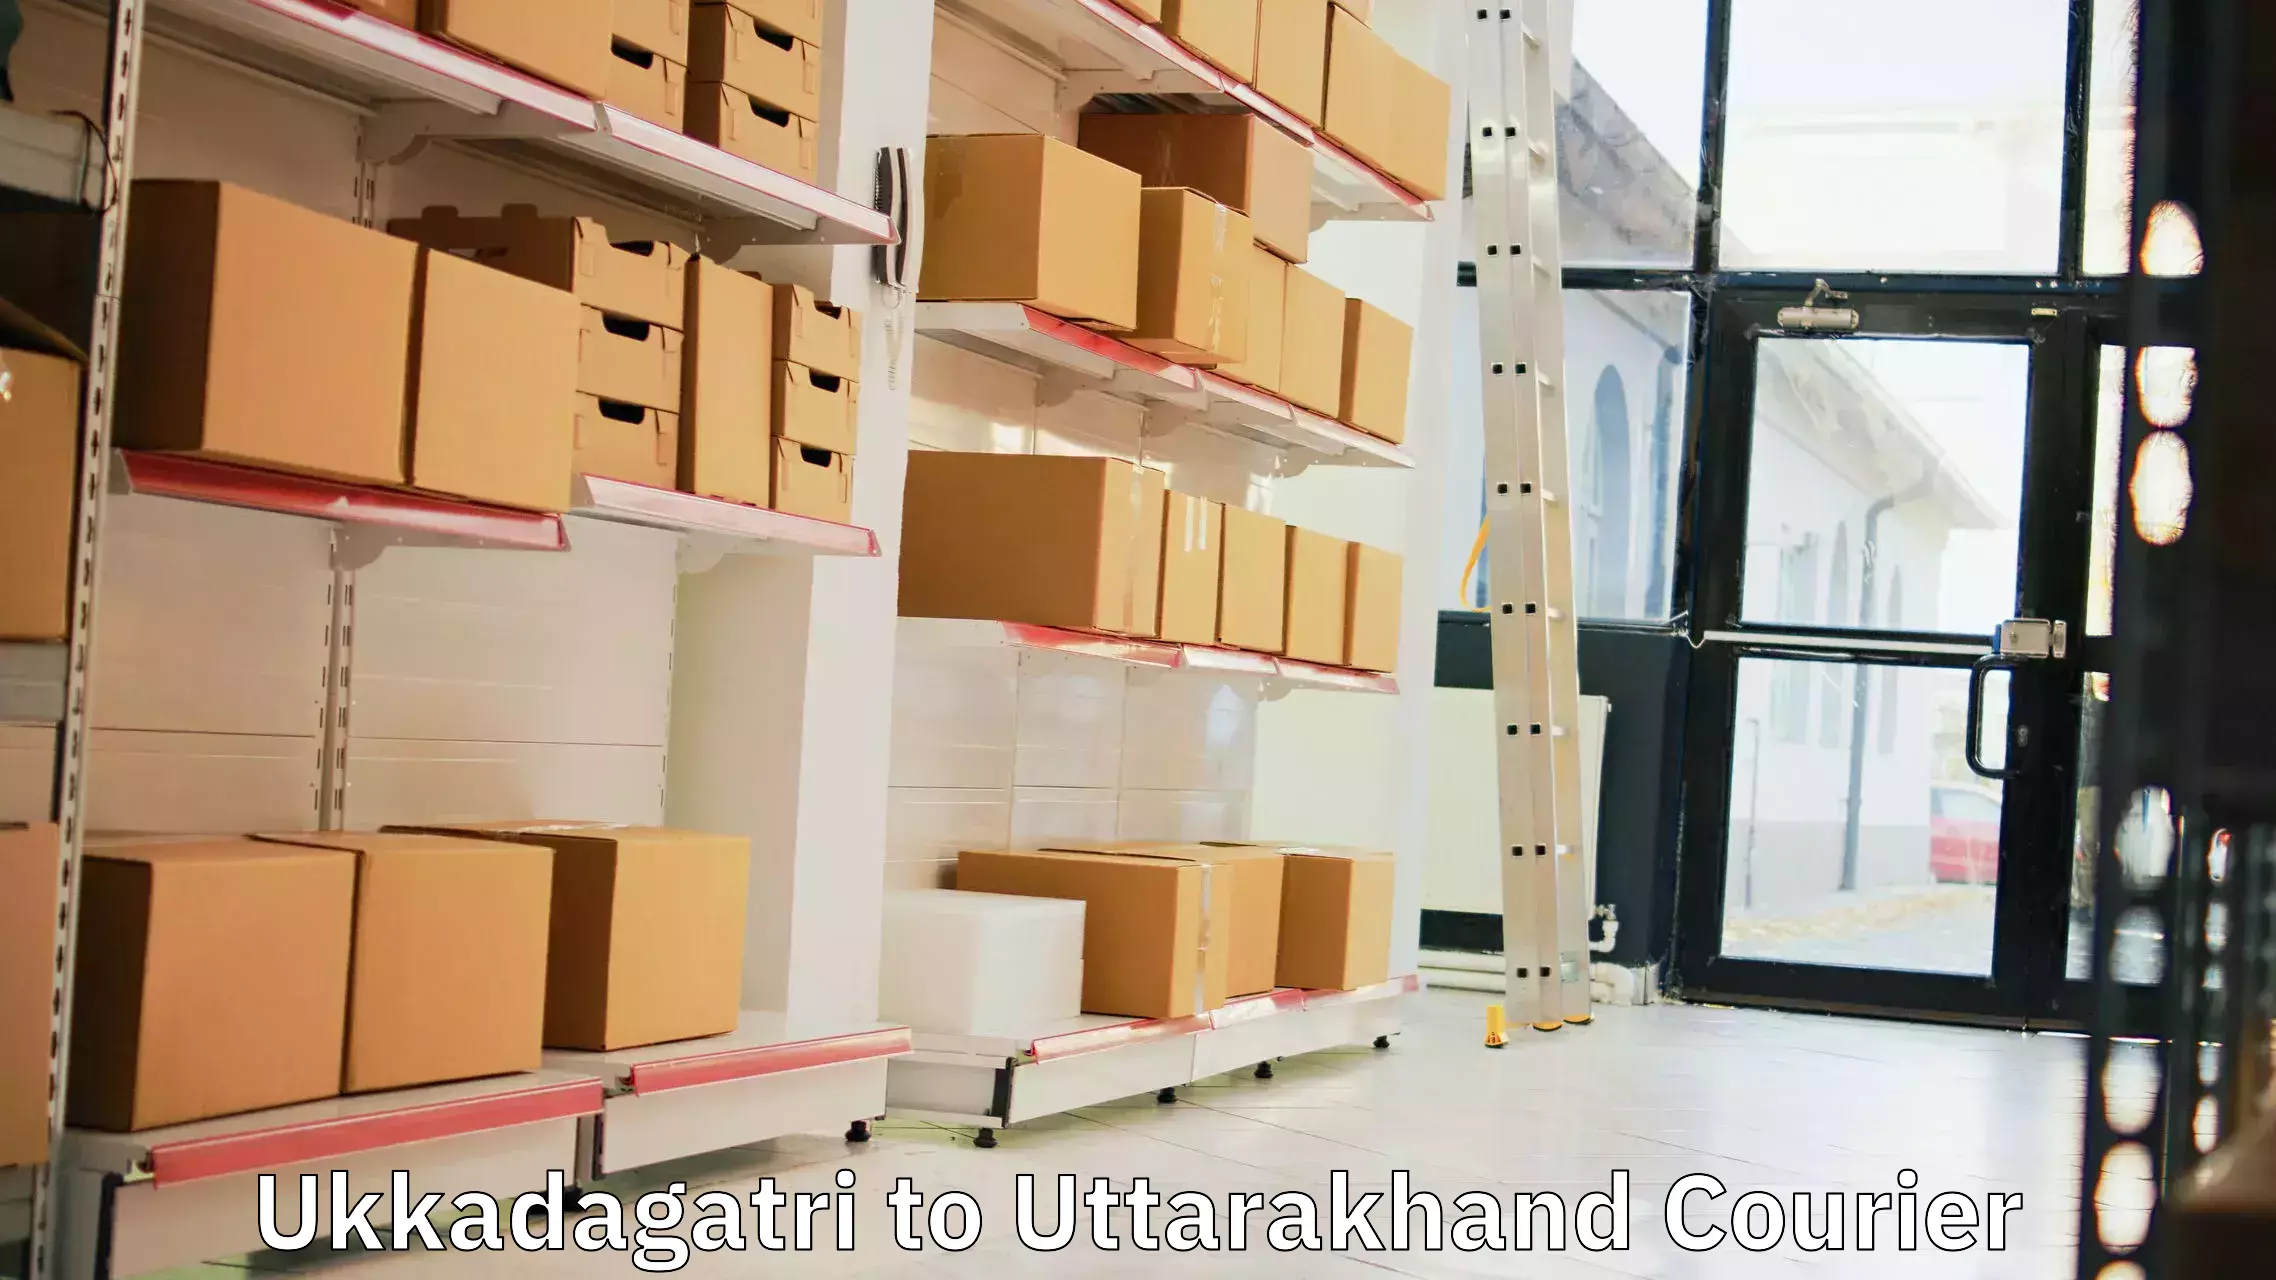 Efficient parcel service Ukkadagatri to Tehri Garhwal